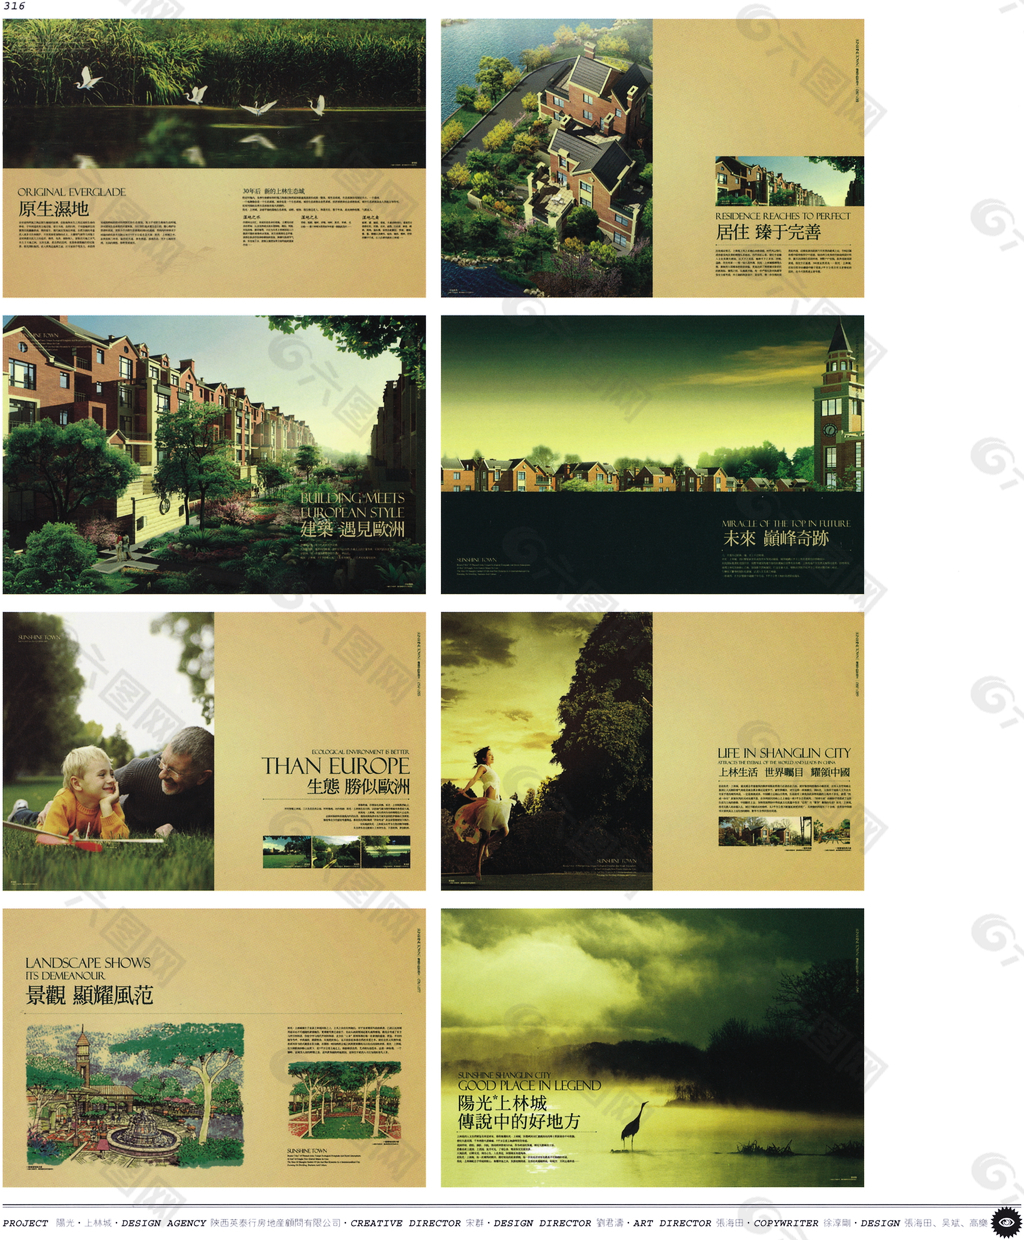 中国房地产广告年鉴 第二册 创意设计_0311